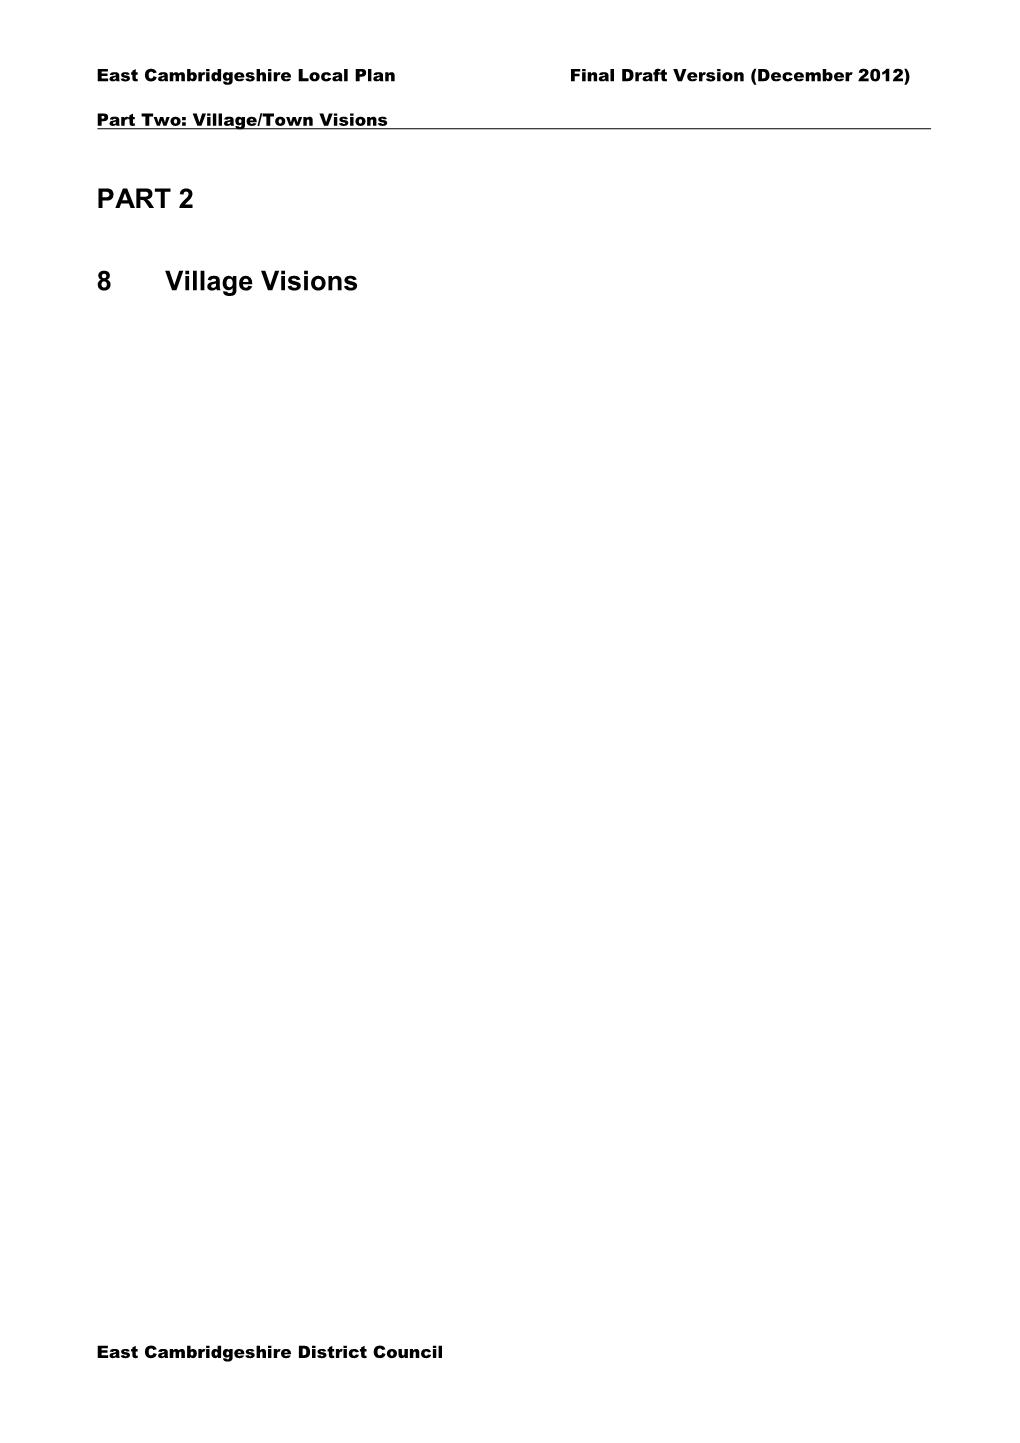 PART 2 8 Village Visions